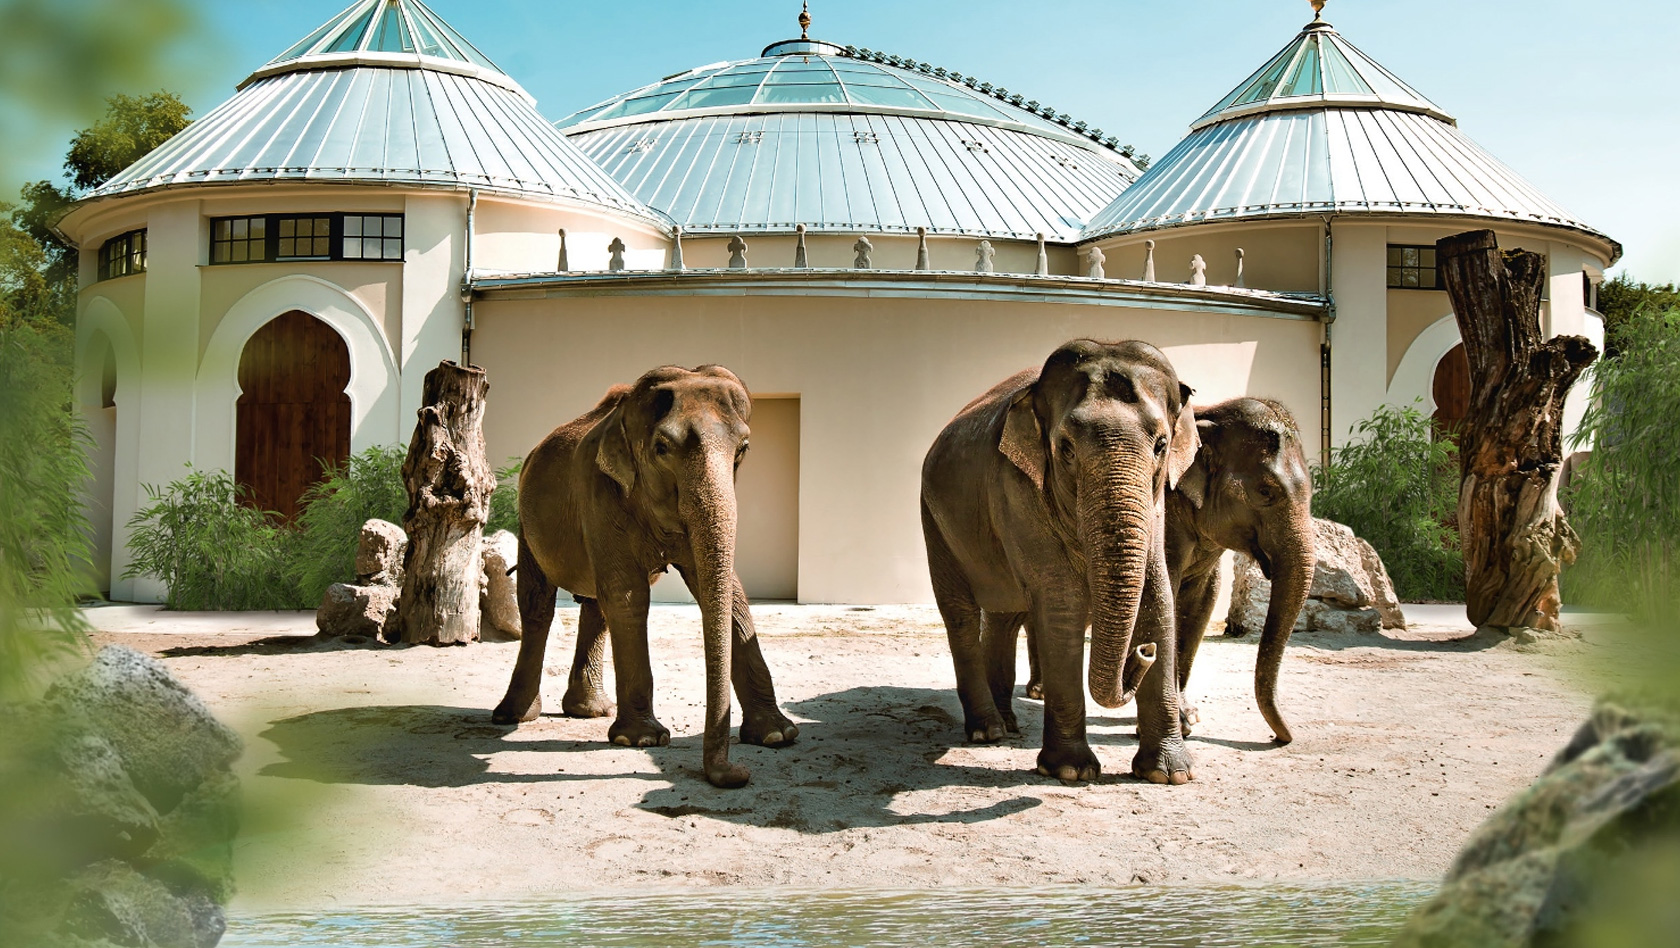 Elefantenhaus im Tierpark Hellabrunn